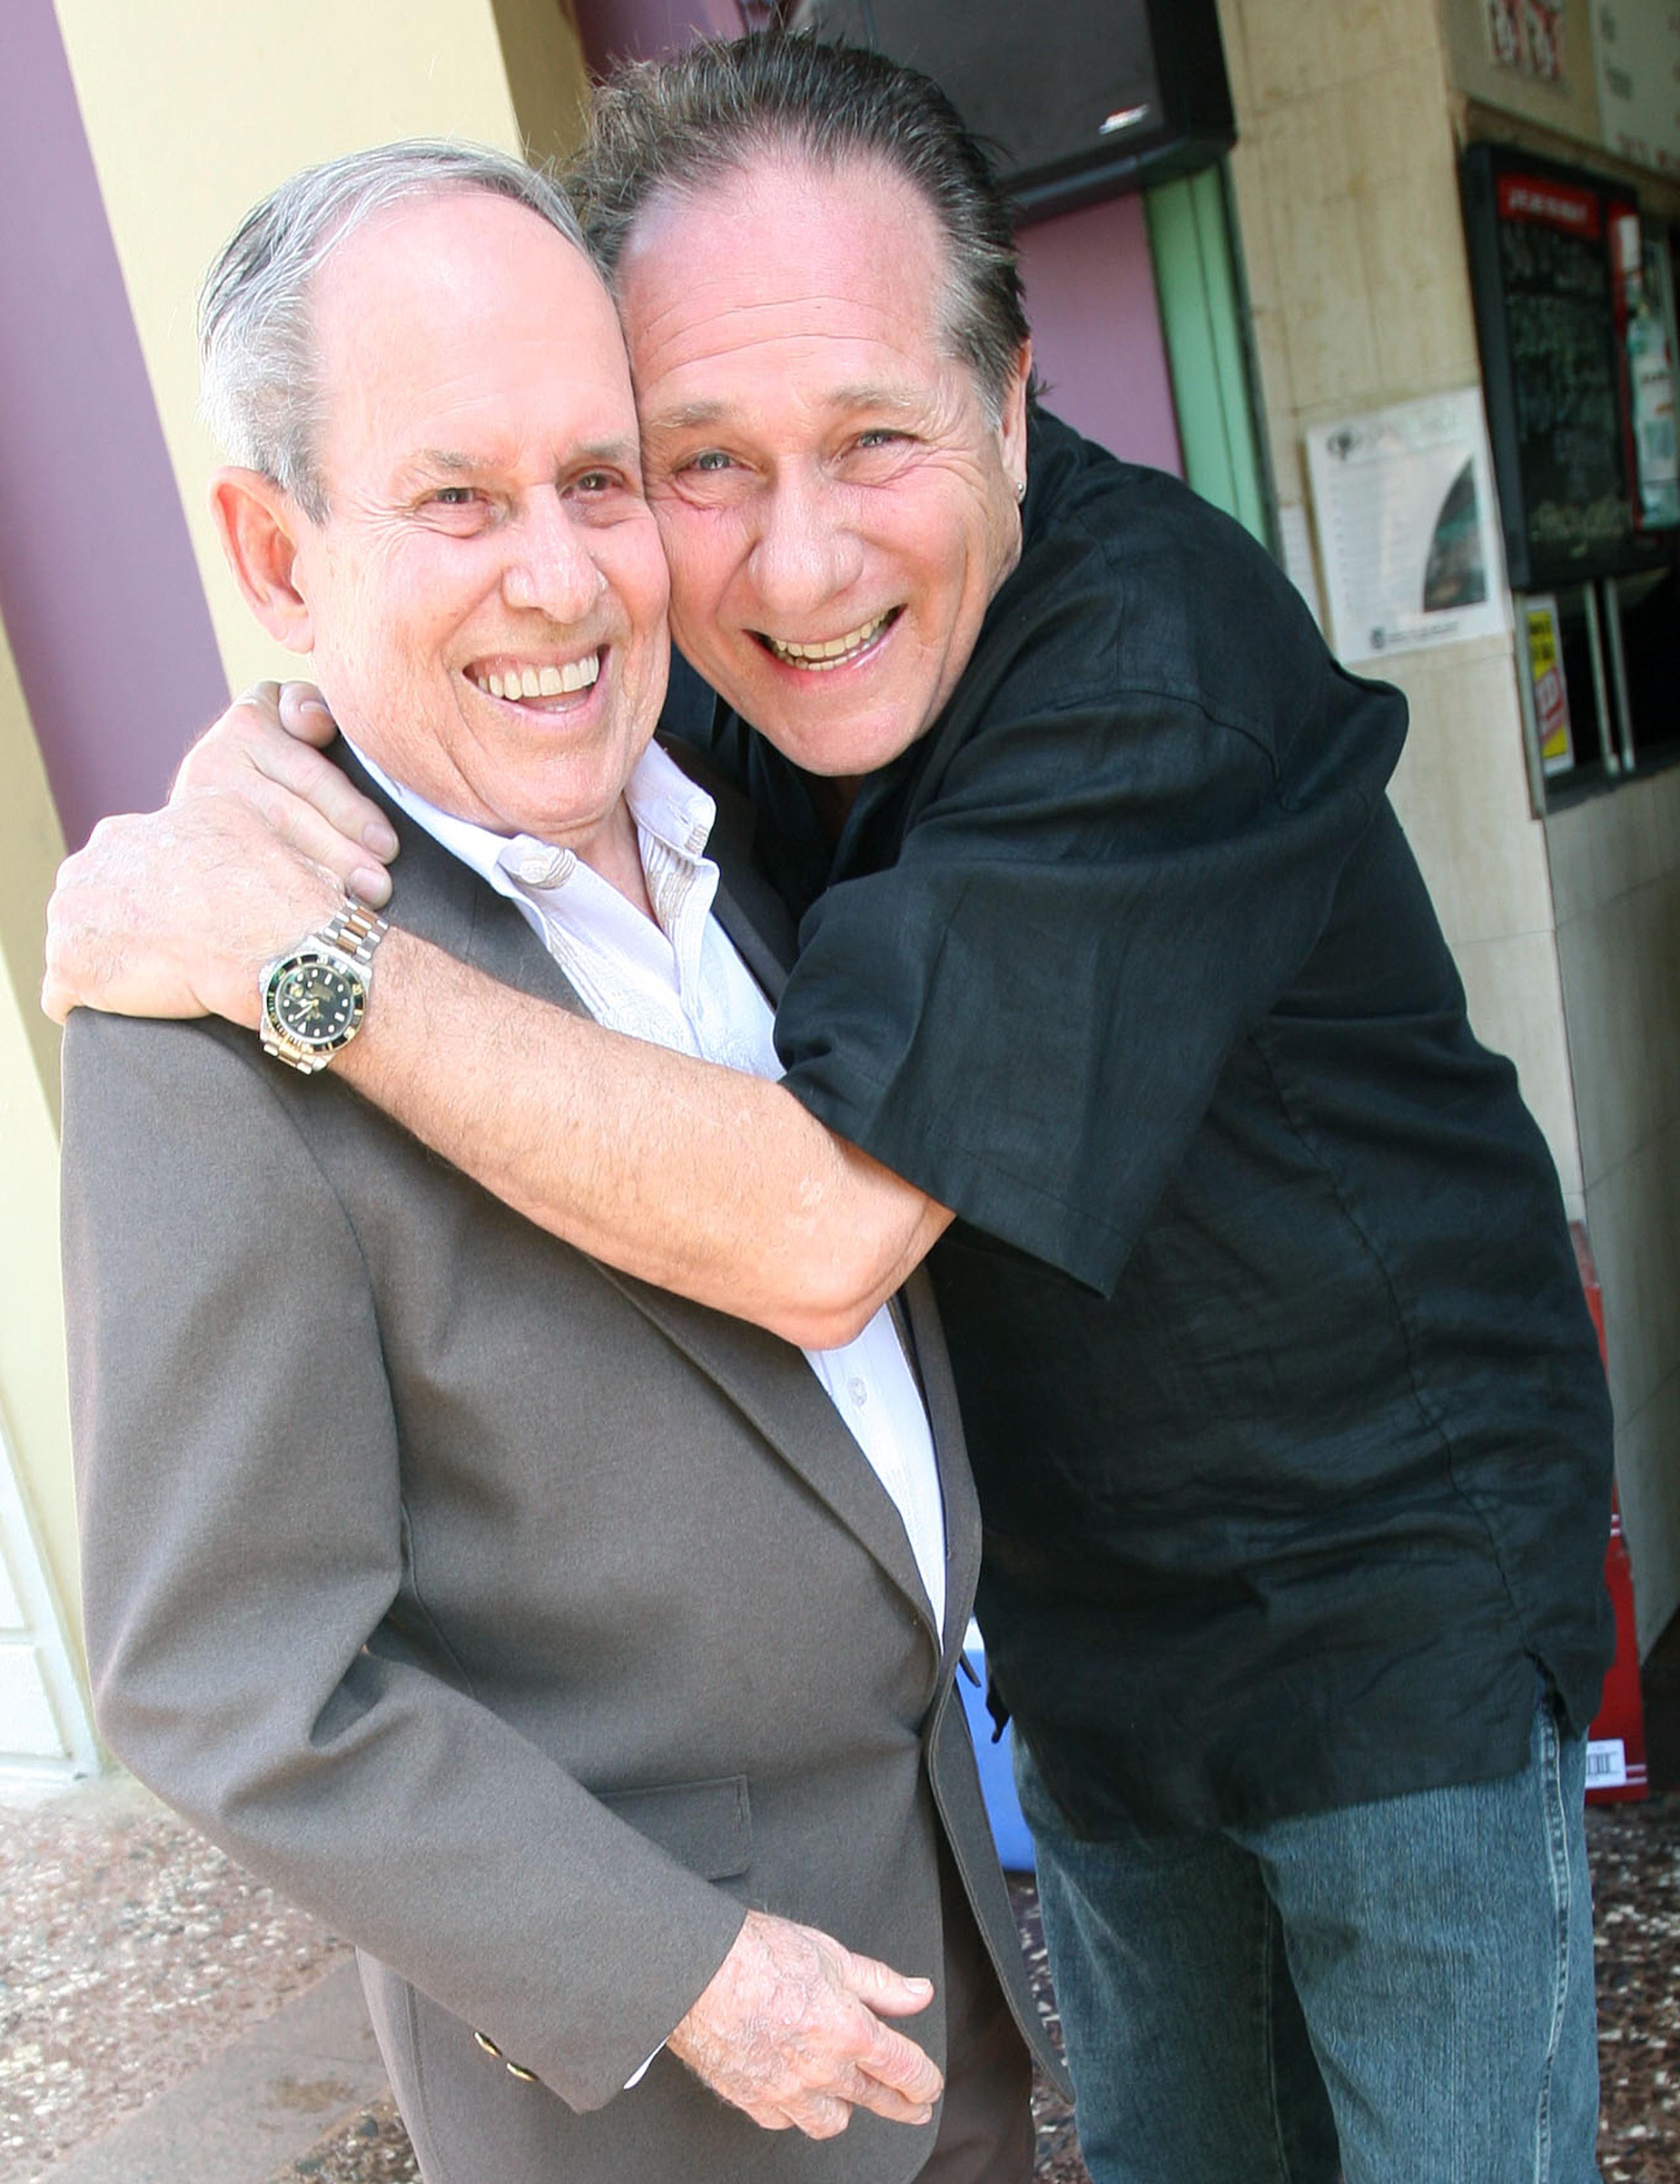 Marianito junto a su padre, don Mariano Artau, en ocasión del 70 aniversario de su carrera radial.